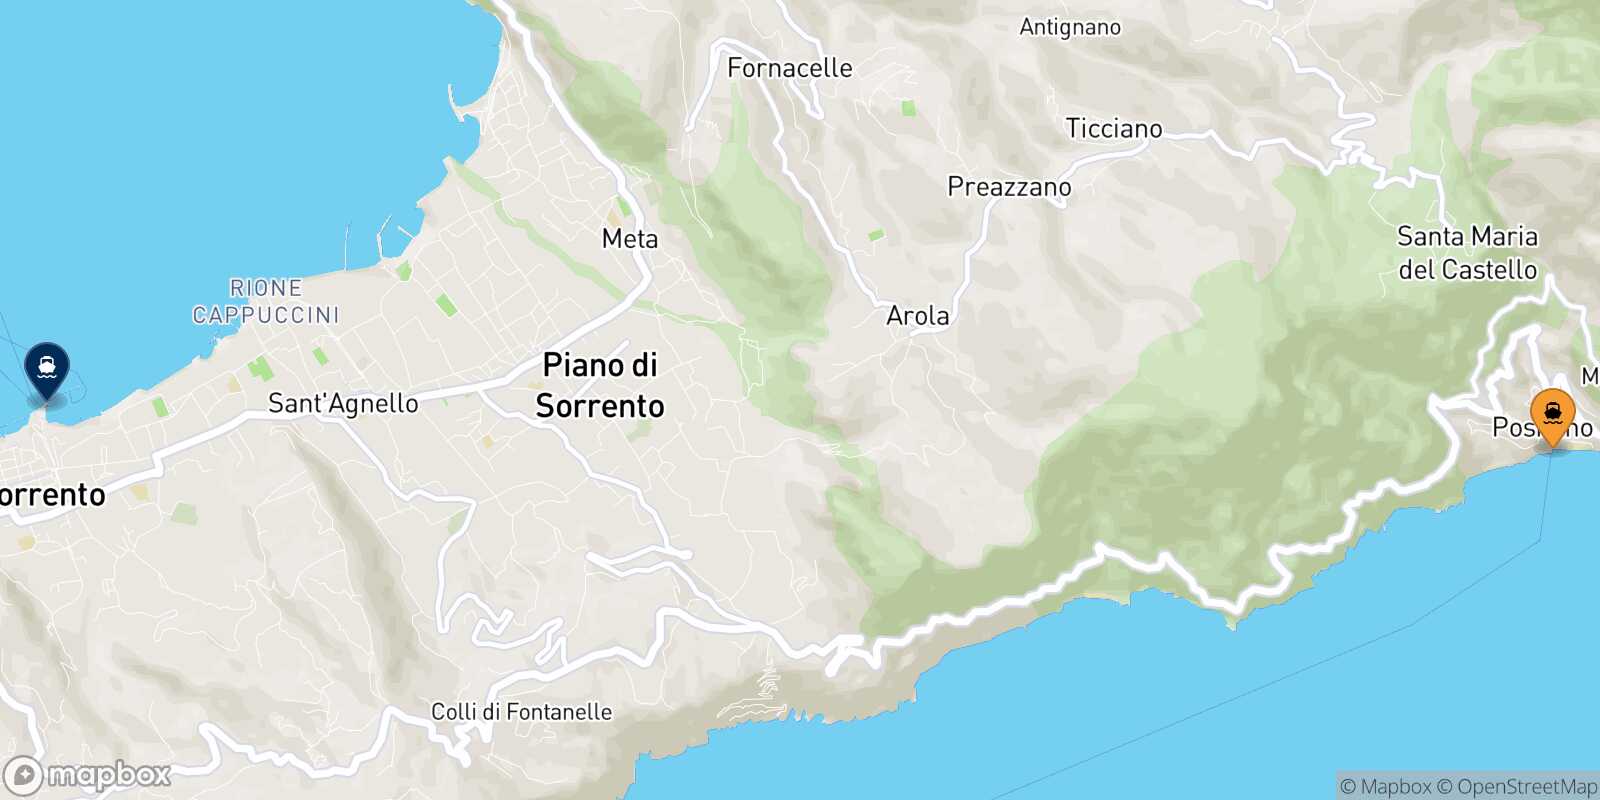 Mapa de la ruta Positano Sorrento